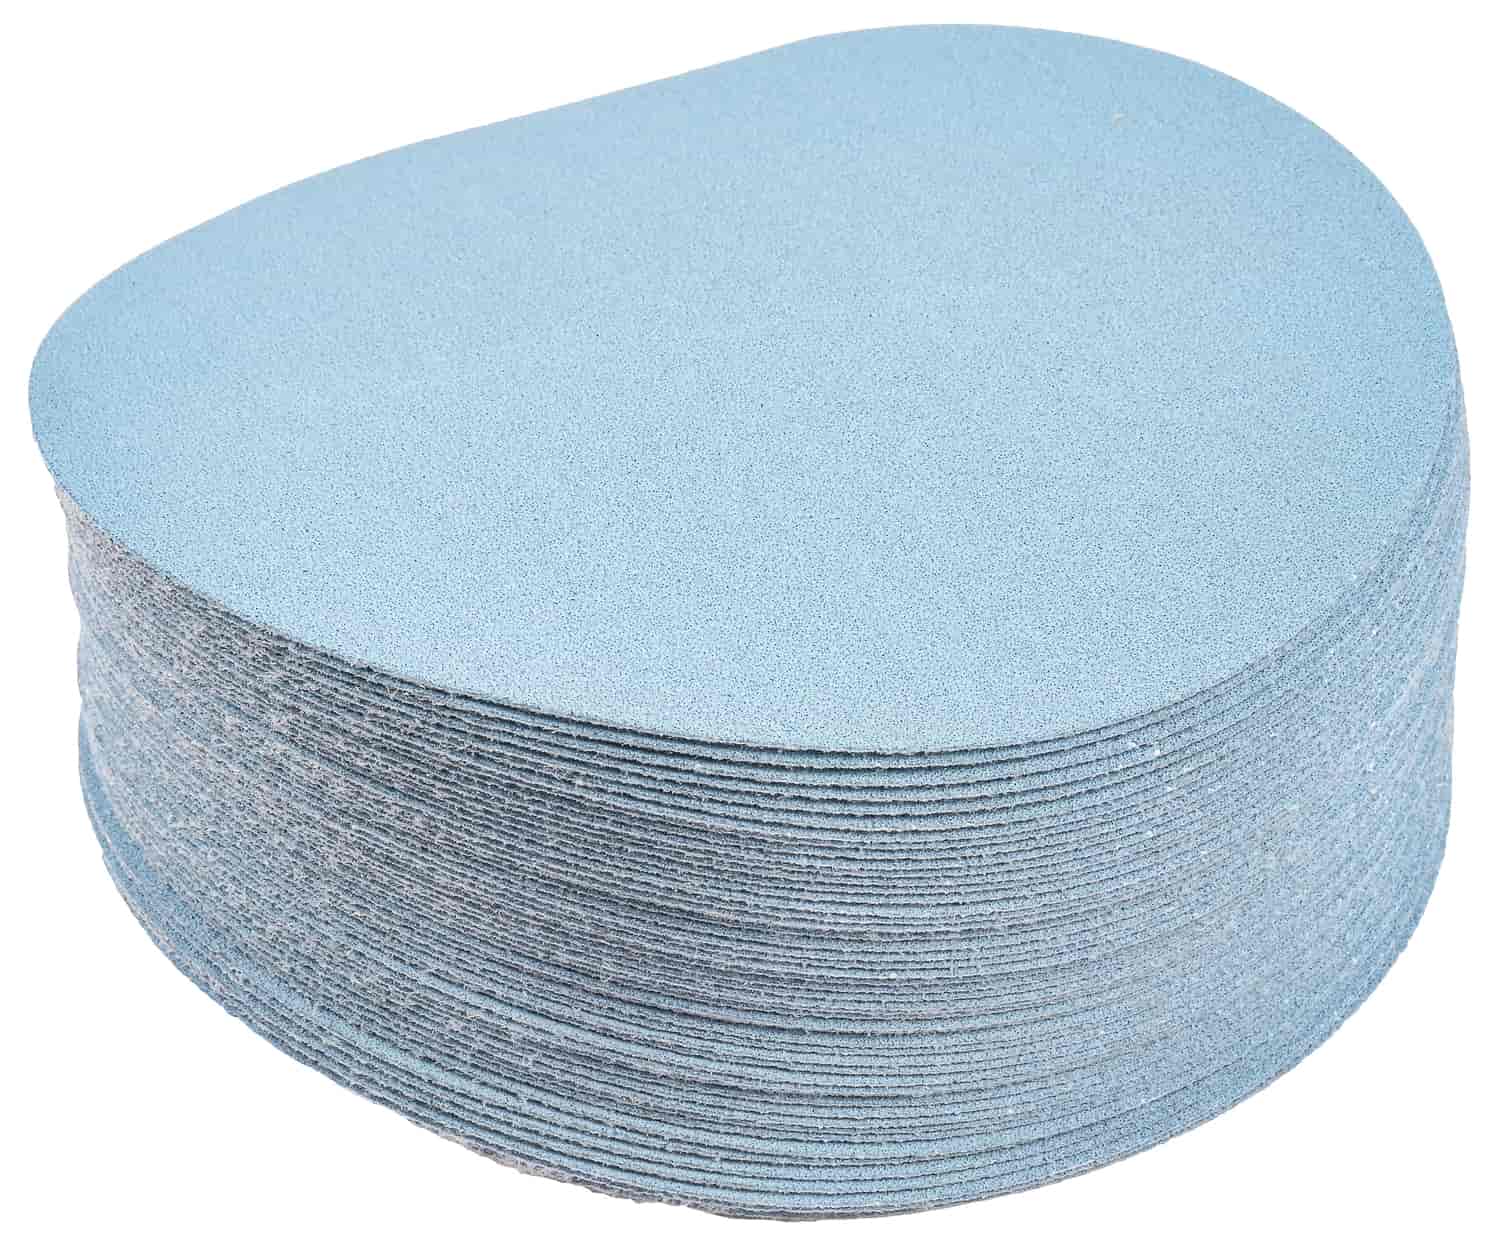 Automotive Sandpaper Discs [120 Grit]